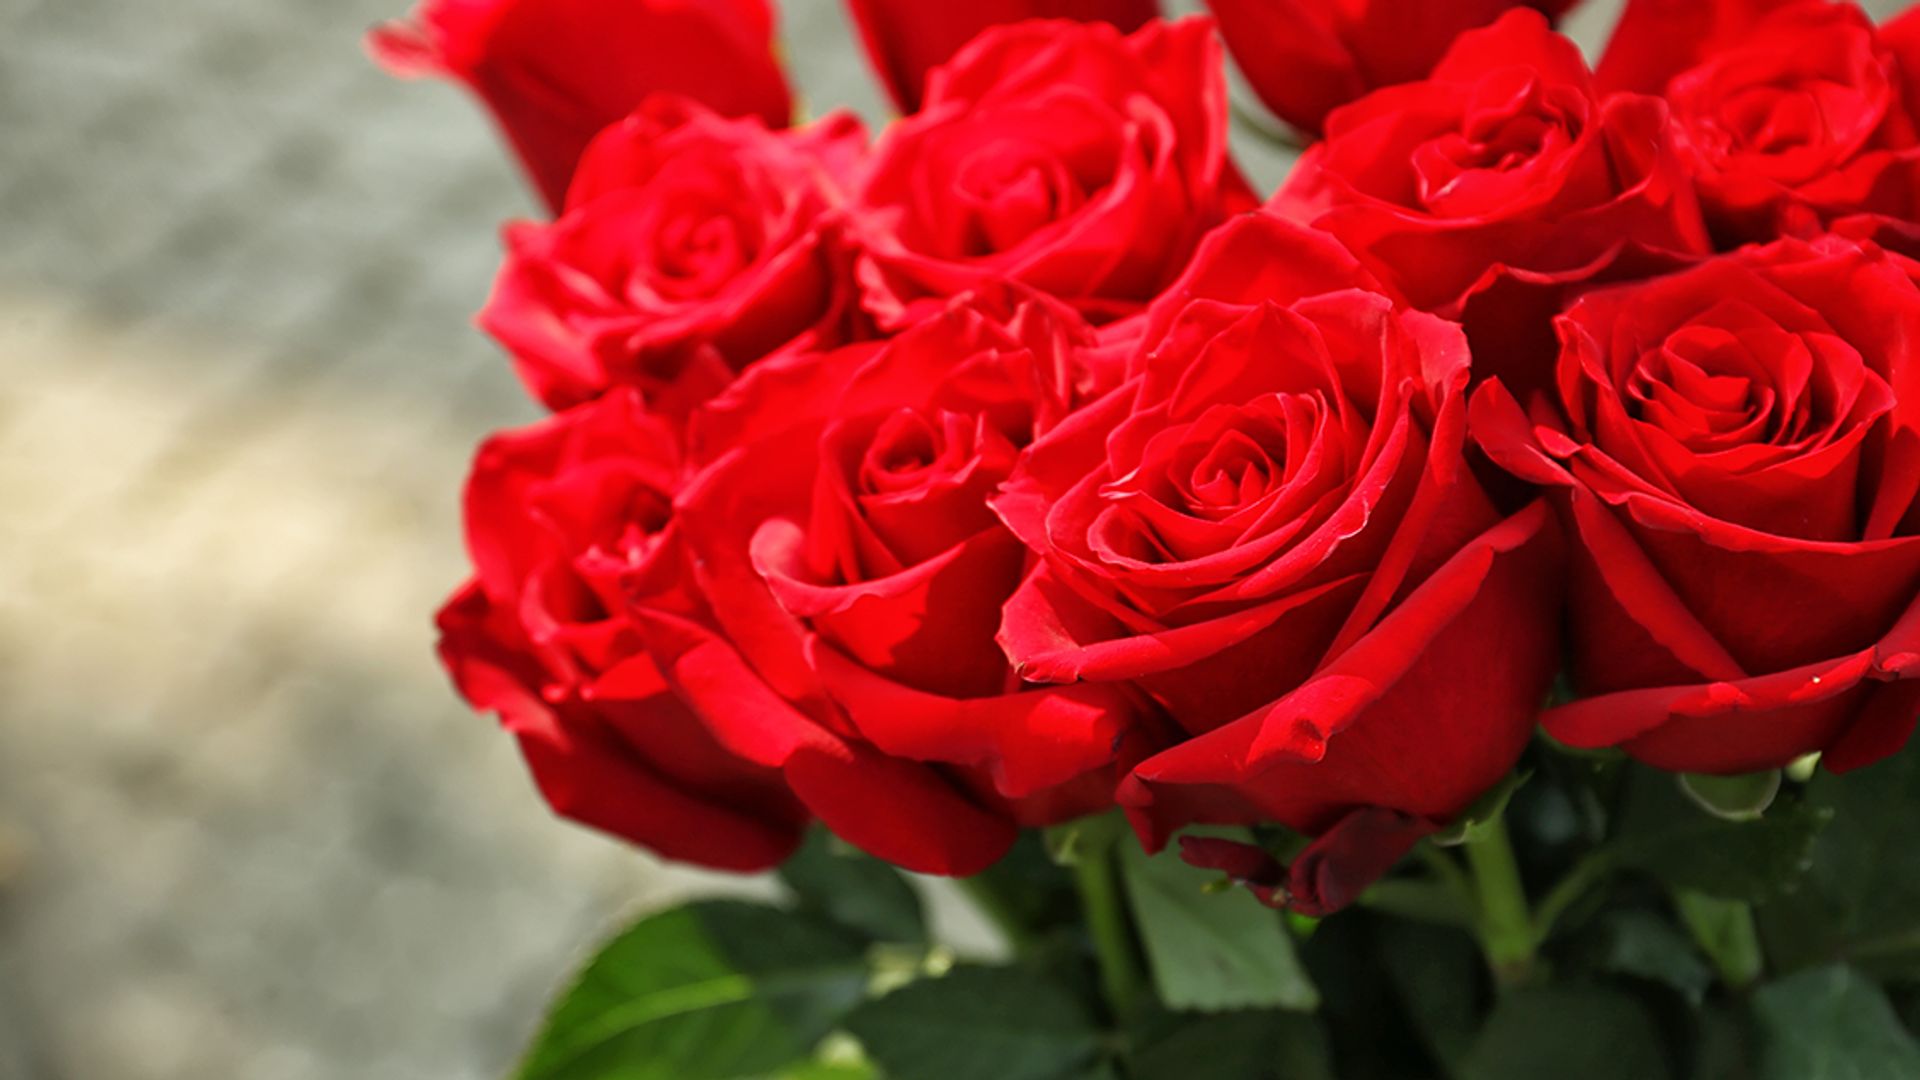 de wind is sterk geroosterd brood Ongeautoriseerd Online een bosje rozen kopen voor Valentijnsdag? Vergelijken loont - Kassa  - BNNVARA